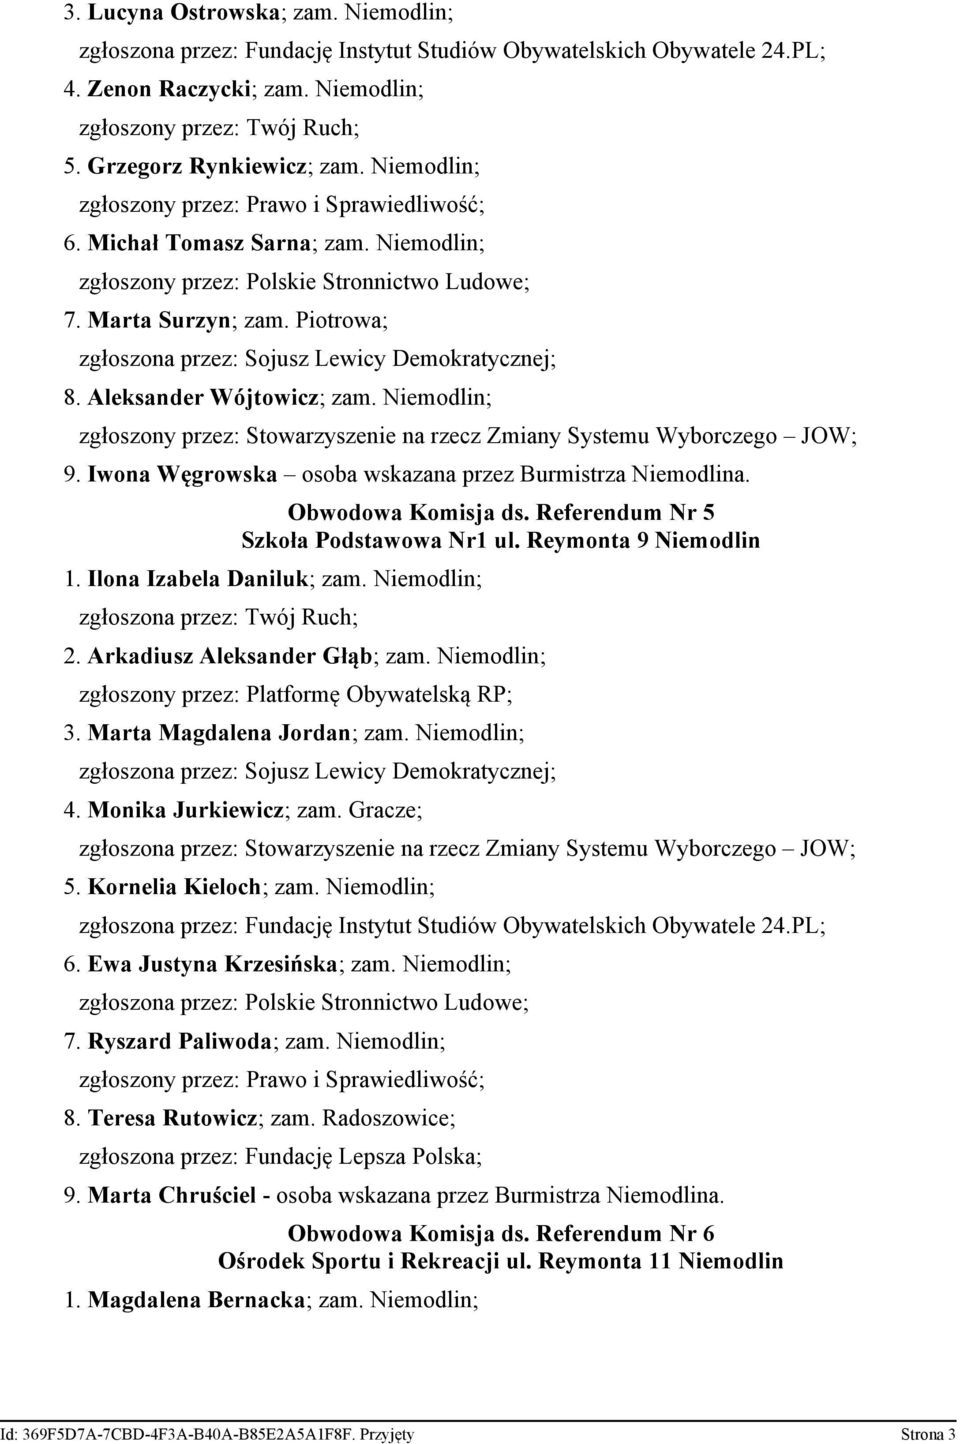 Niemodlin; zgłoszony przez: Stowarzyszenie na rzecz Zmiany Systemu Wyborczego JOW; 9. Iwona Węgrowska osoba wskazana przez Burmistrza Niemodlina. Obwodowa Komisja ds.